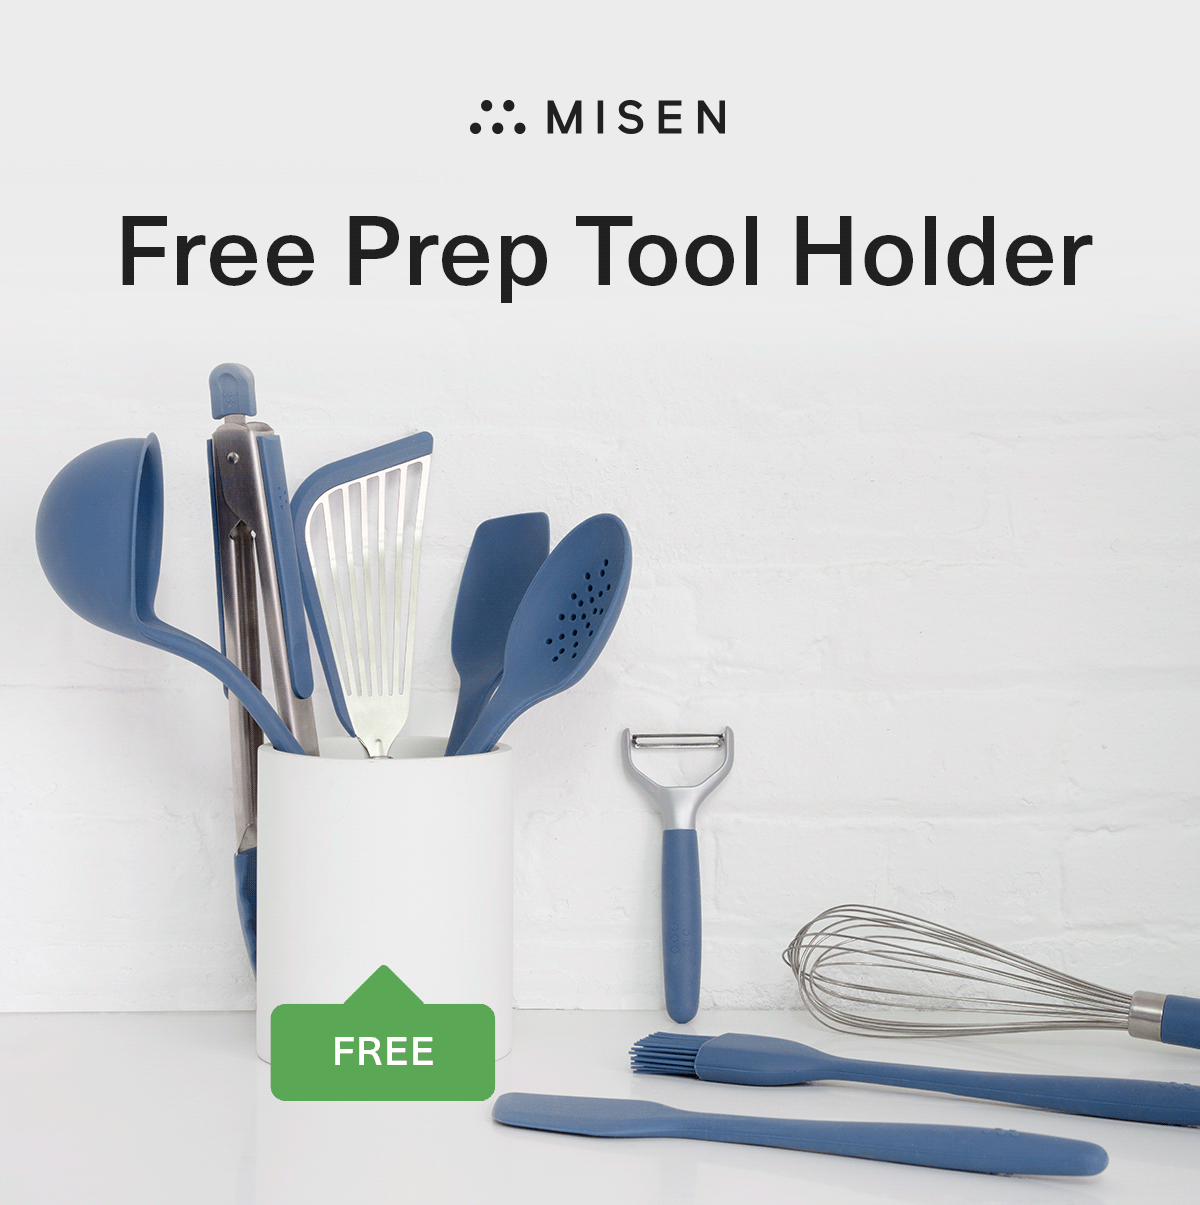 Misen Prep Tool Holder - Final Sale